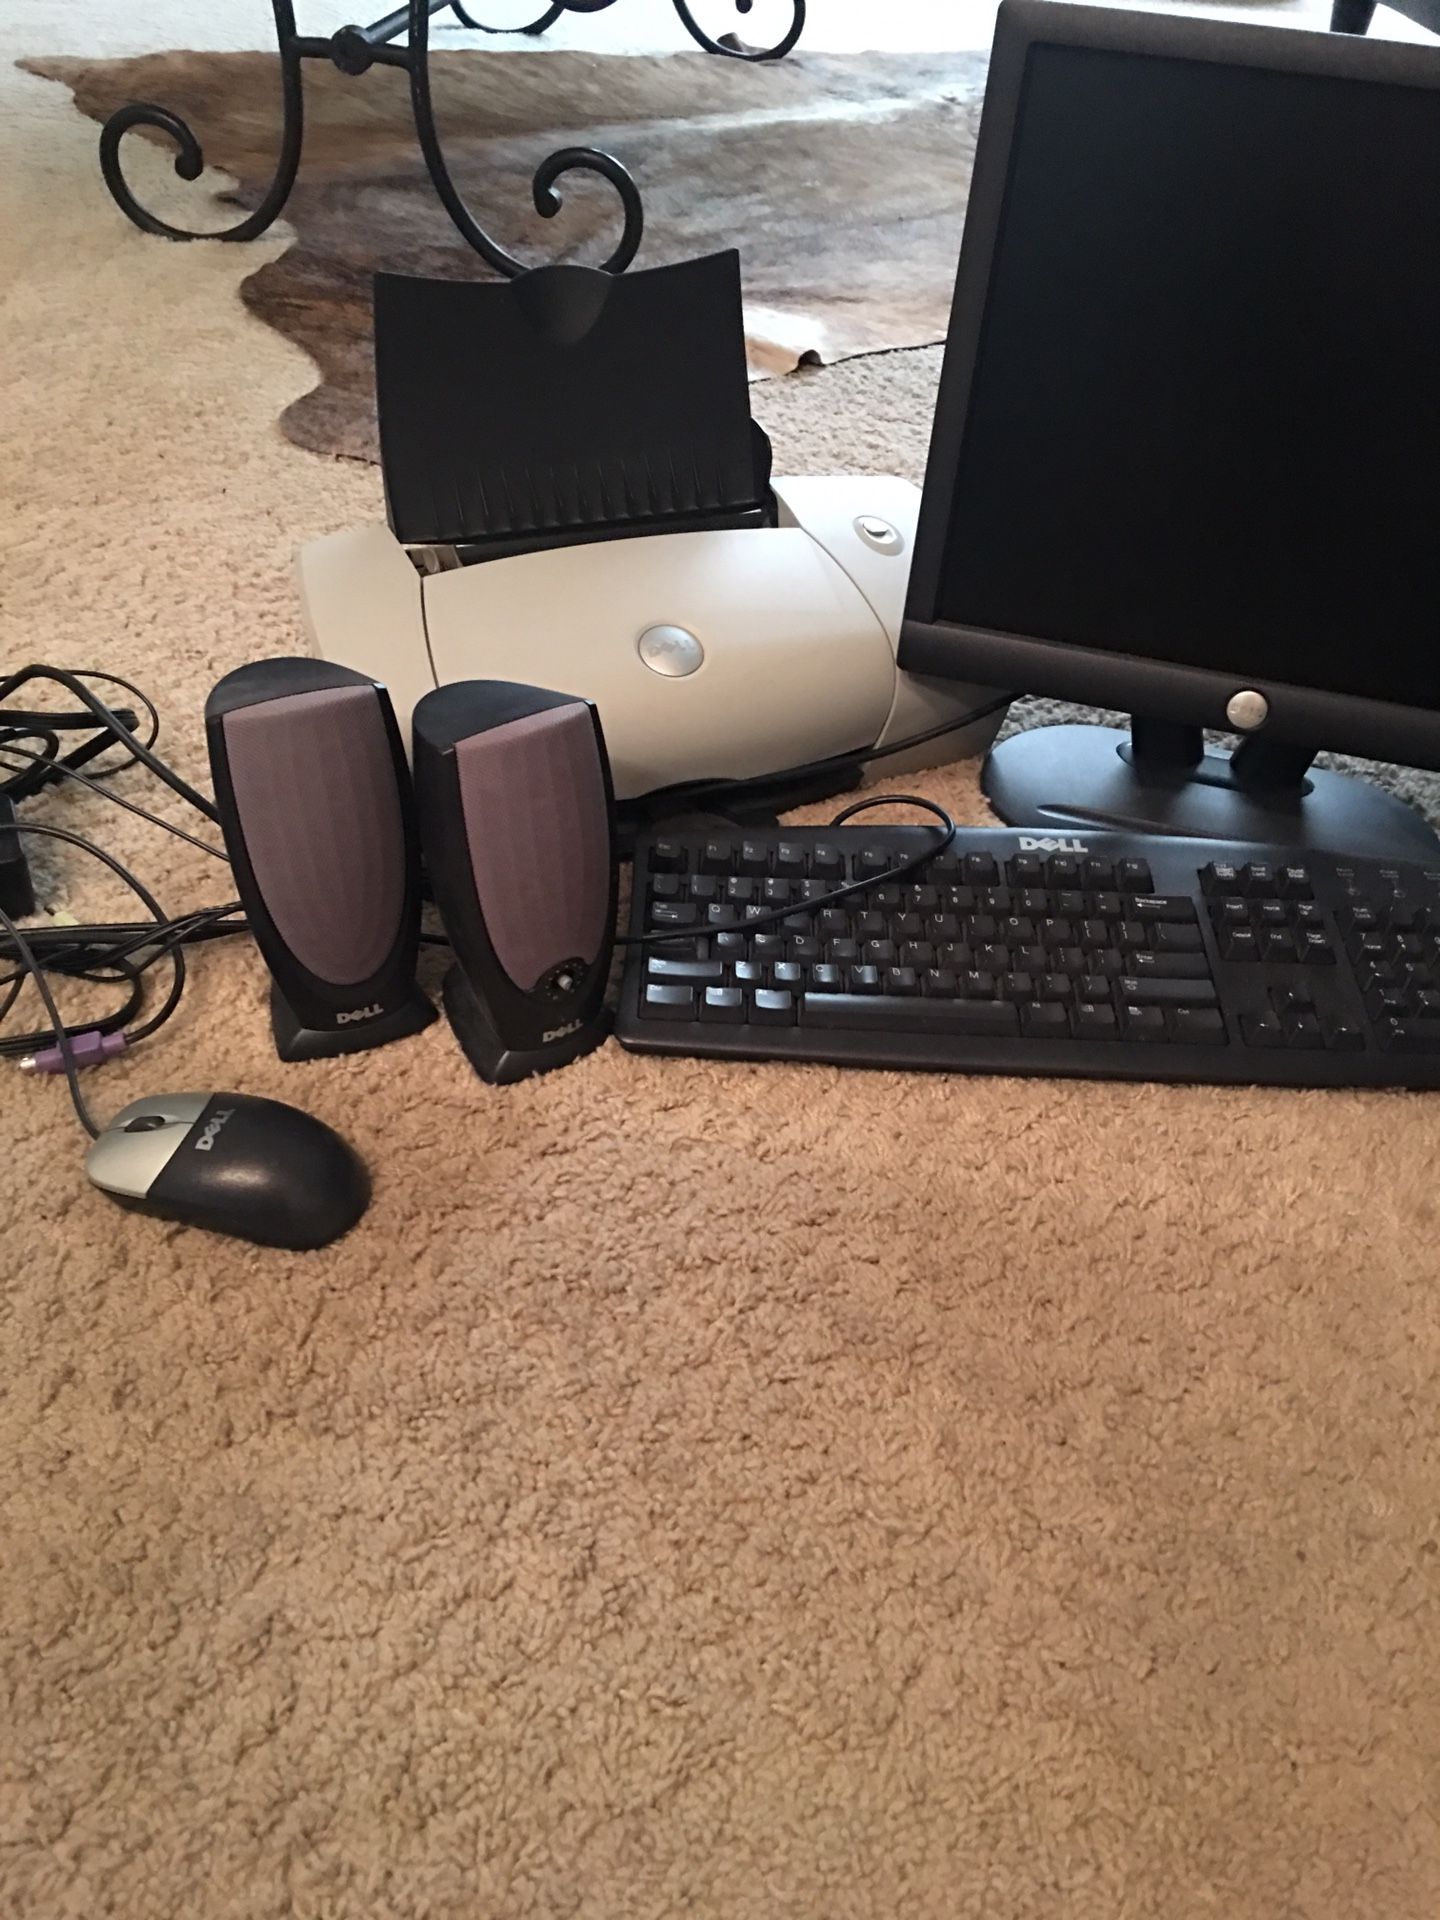 Dell computer set